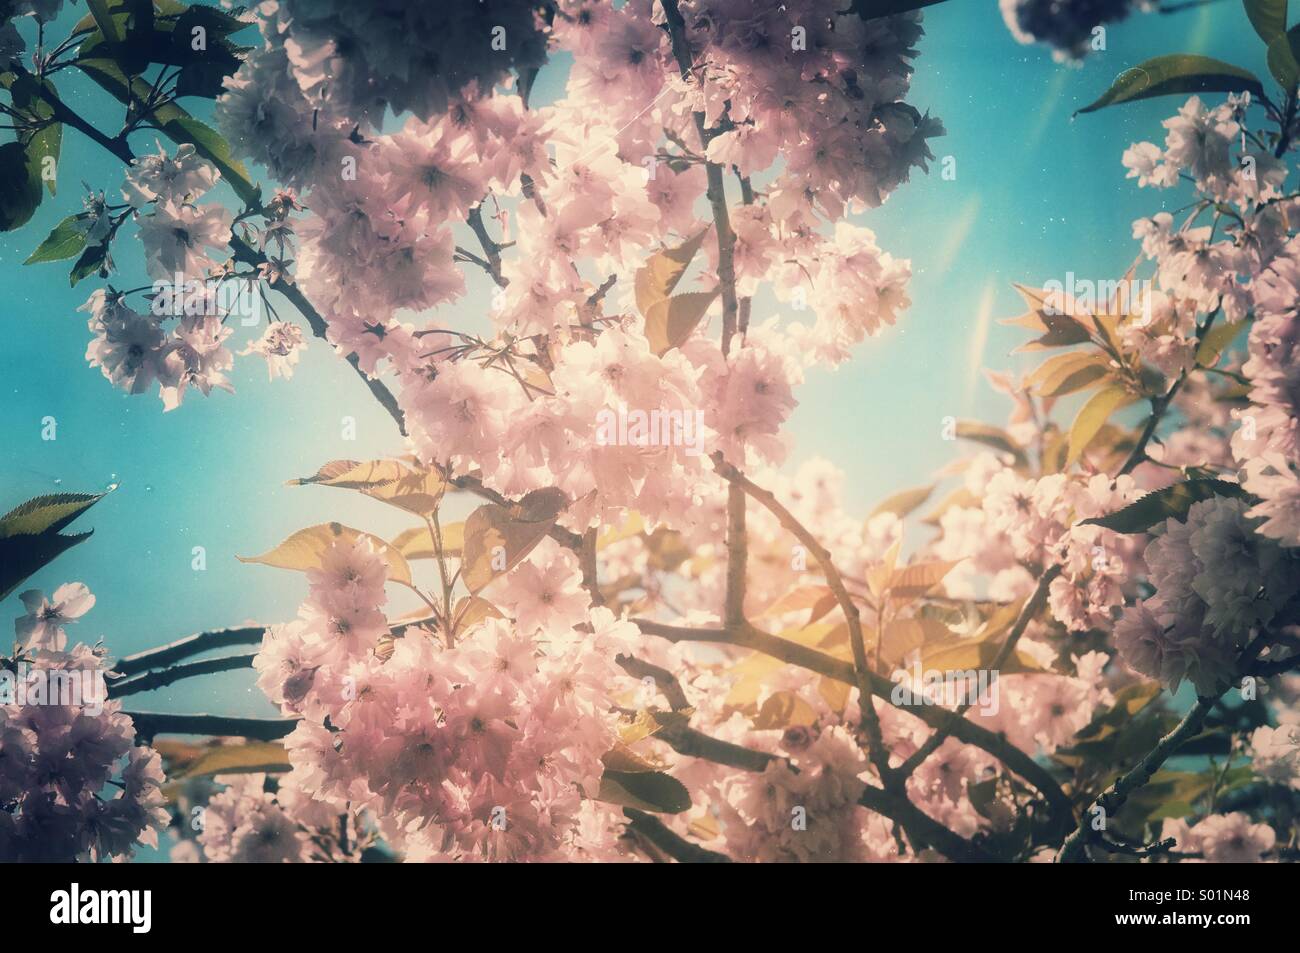 Los cerezos florecen en primavera con una atmósfera nostálgica Foto de stock